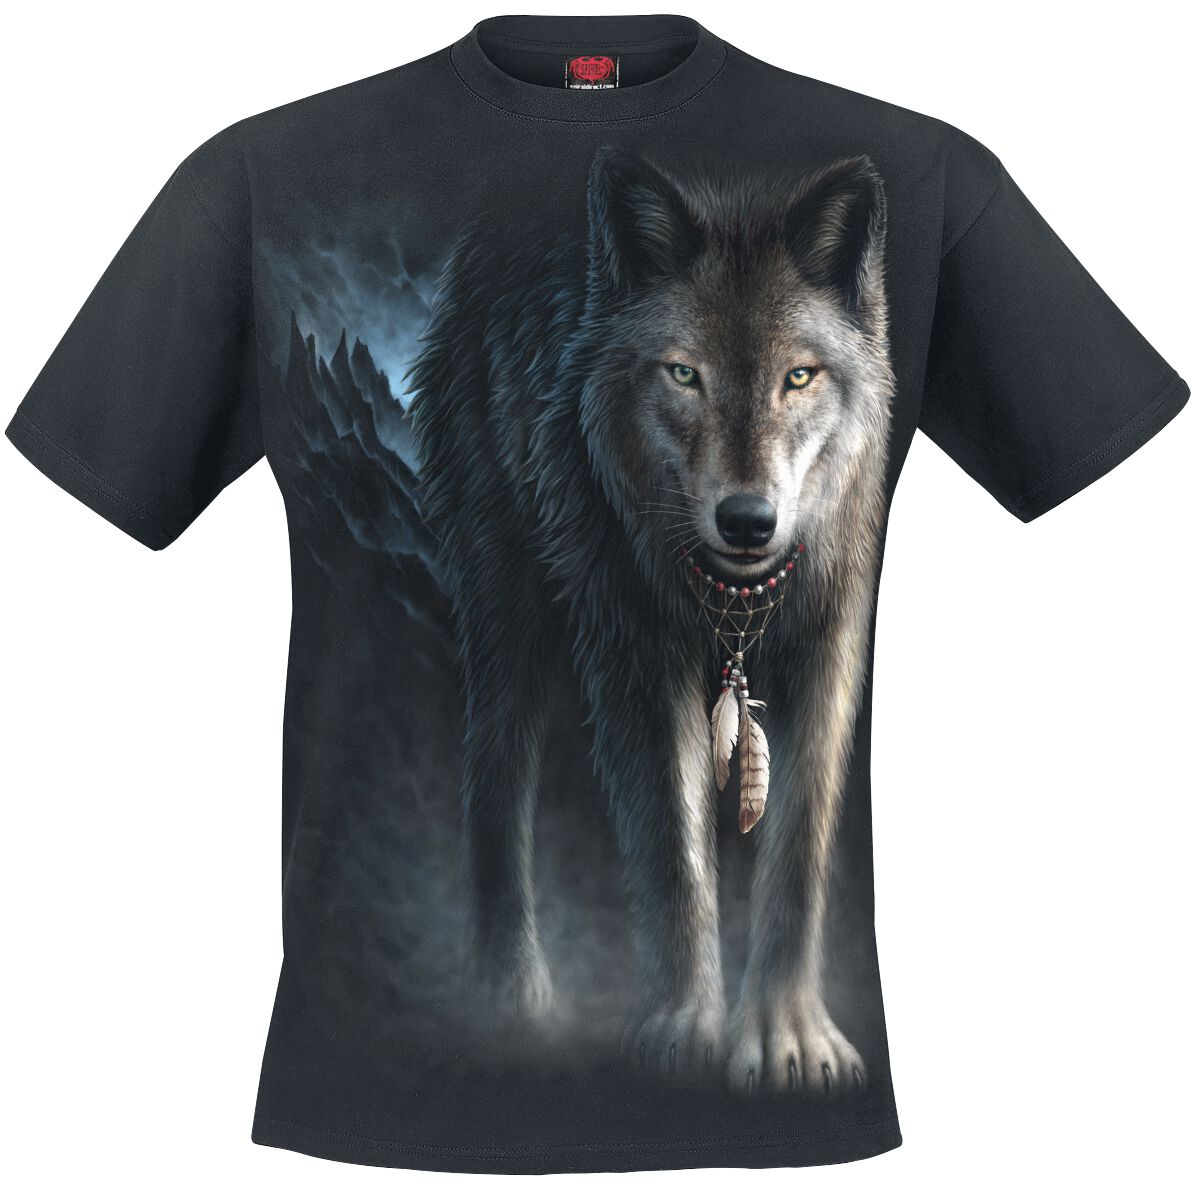 Spiral - Gothic T-Shirt - From Darkness - S bis 4XL - für Männer - Größe L - schwarz